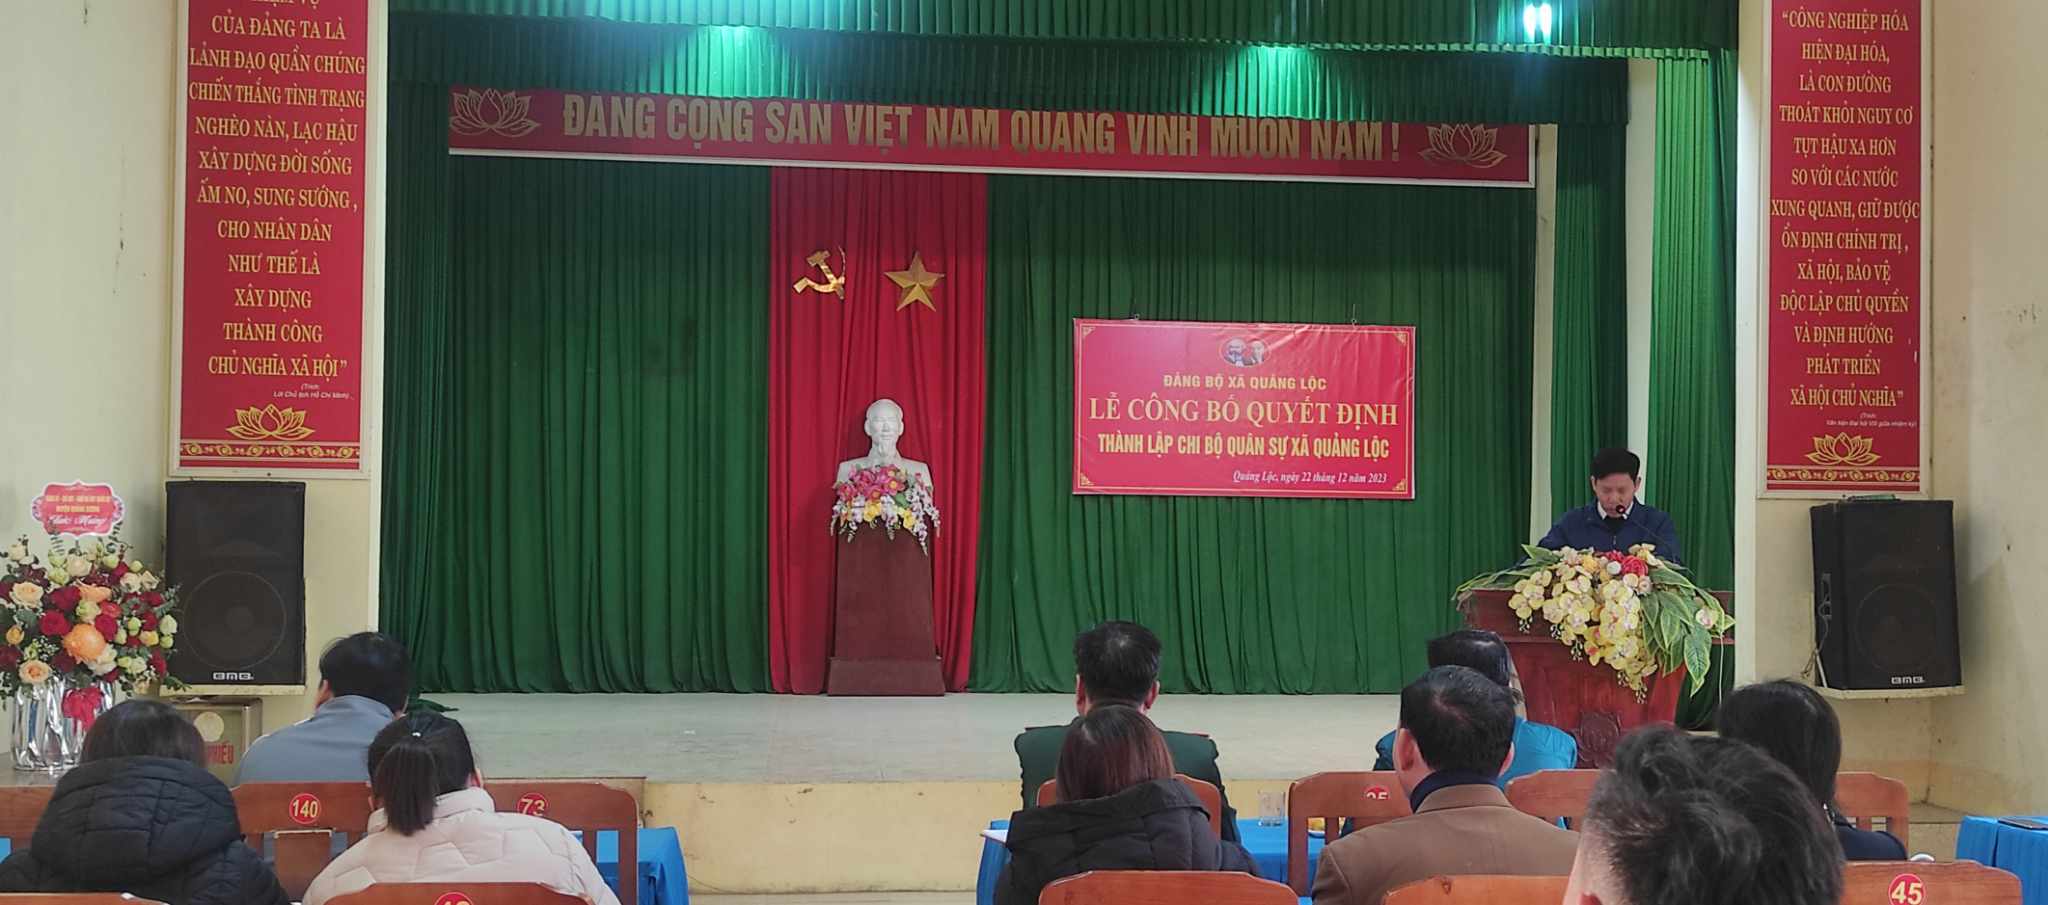 Lễ công bố Quyết định thành lập Chi bộ Quân sự và Chi bộ Trạm Y Tế xã Quảng Lộc